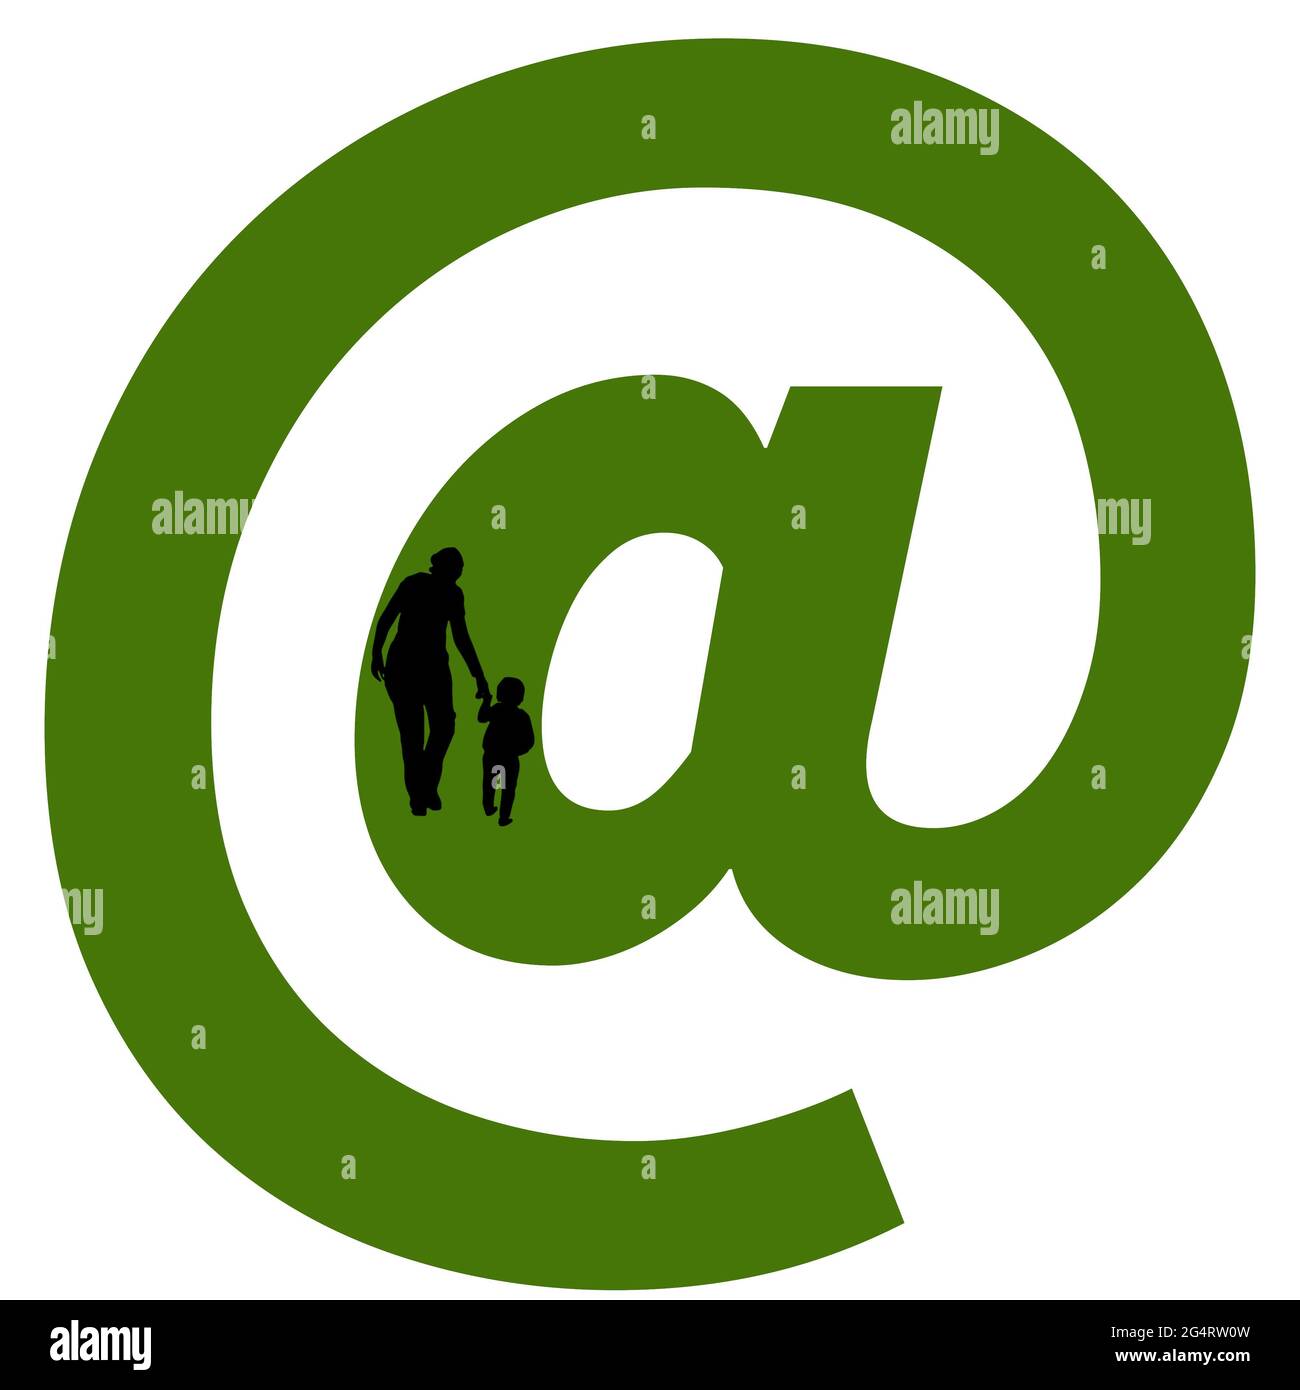 Al segno dell'alfabeto fatto con la silhouette di una madre e di un bambino che cammina, in verde e nero Foto Stock